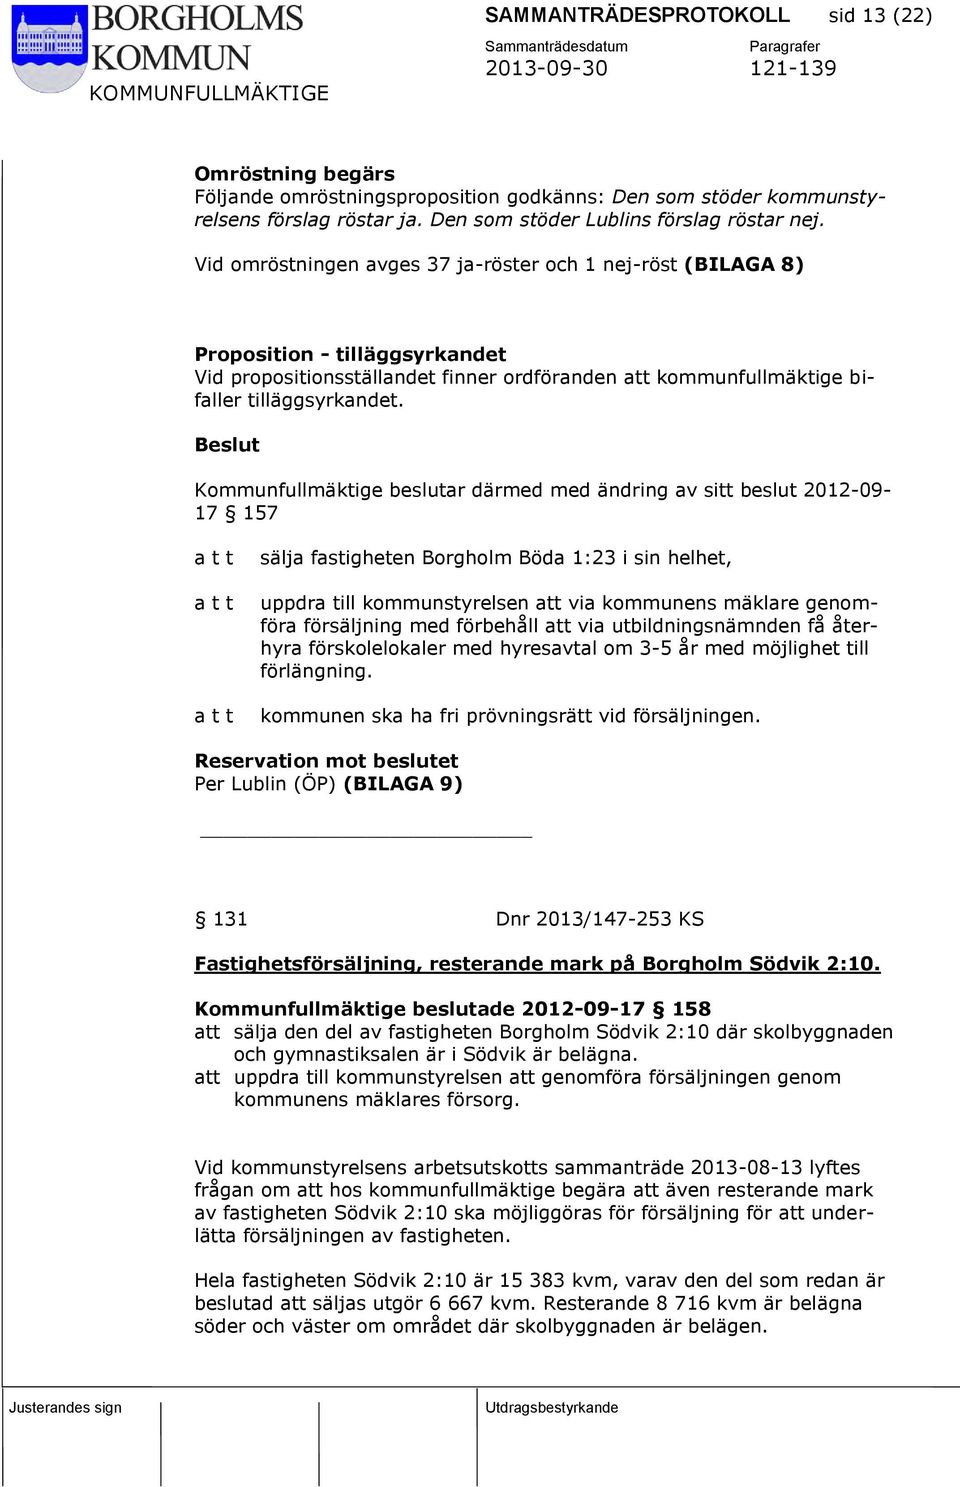 Beslut Kommunfullmäktige beslutar därmed med ändring av sitt beslut 2012-09- 17 157 a t t a t t a t t sälja fastigheten Borgholm Böda 1:23 i sin helhet, uppdra till kommunstyrelsen att via kommunens